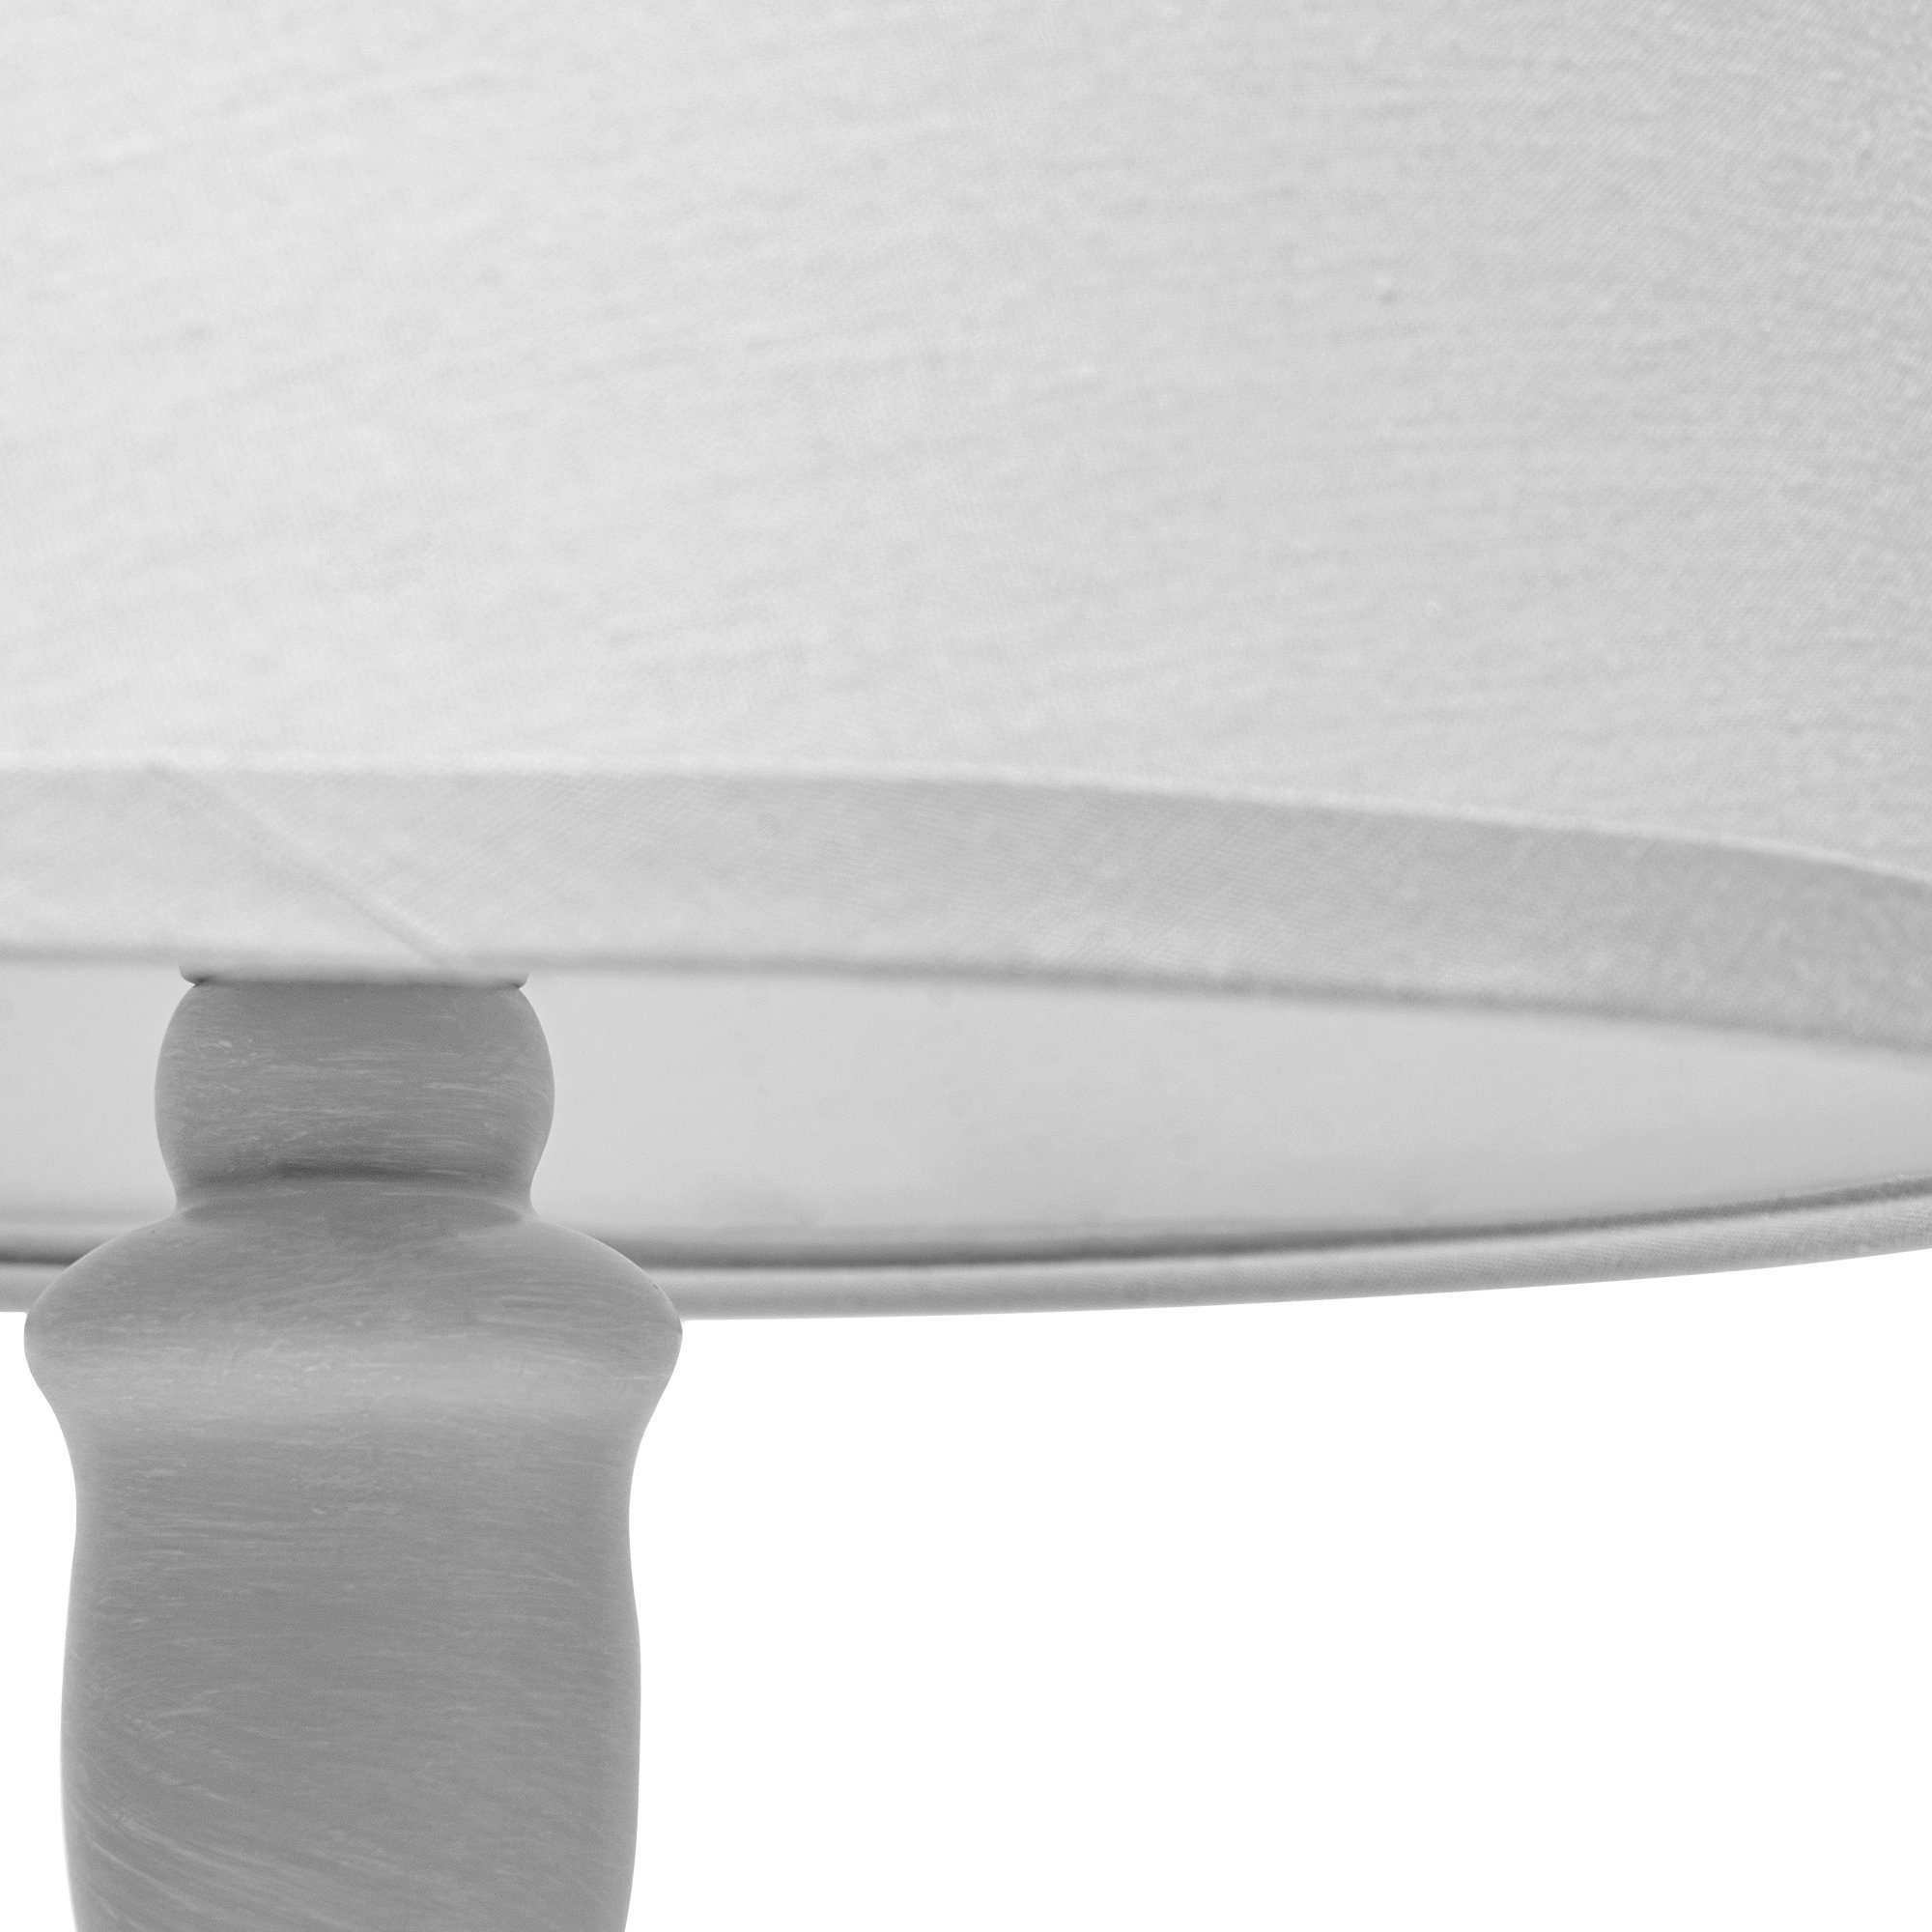 2 Tischleuchte grau Tischleuchten, GITTA ohne Konsimo Leuchtmittel, Stück